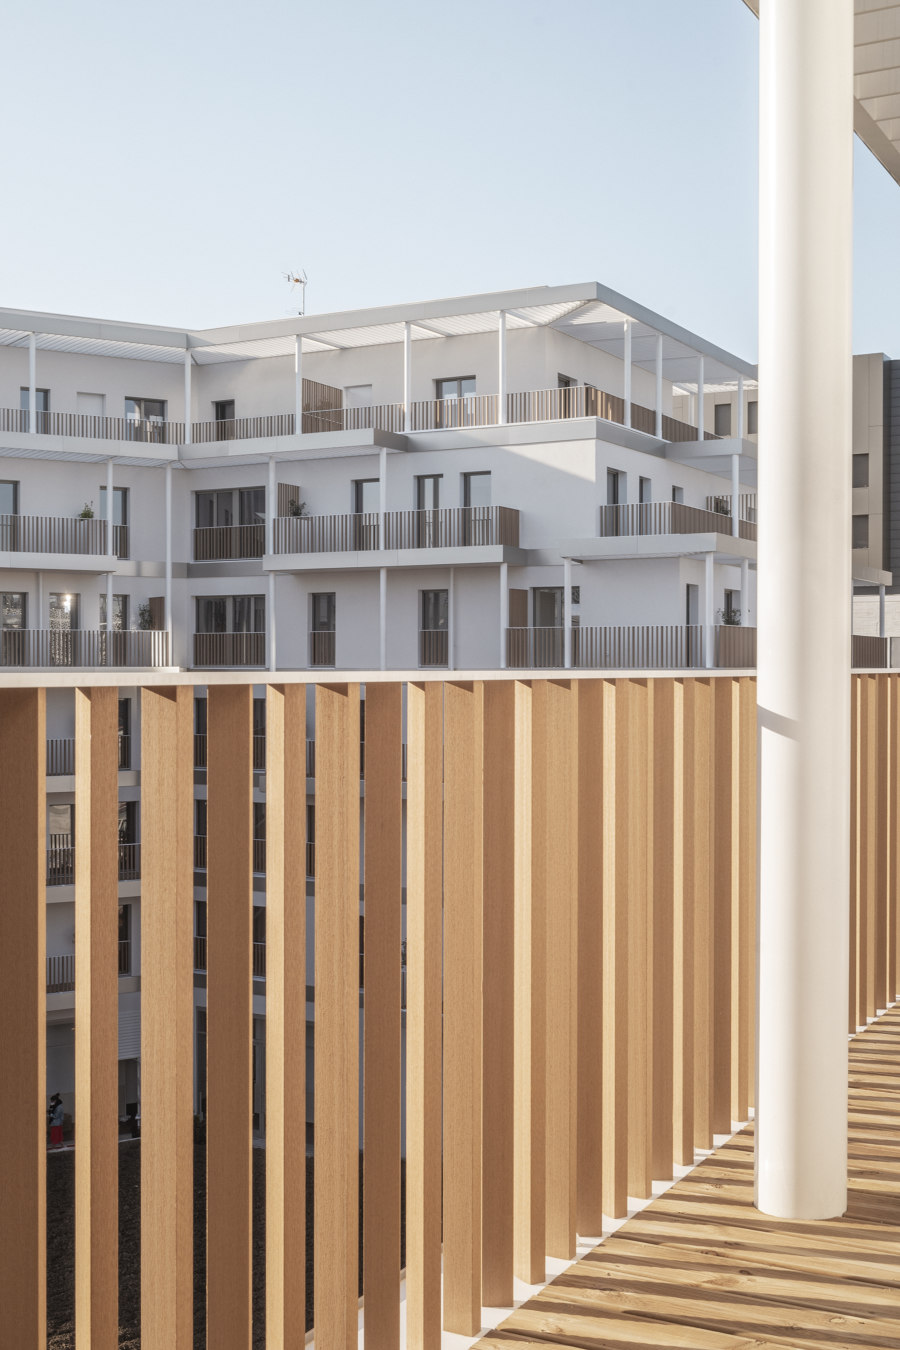 Vélizy Morane Saulnier Apartments von DREAM | Mehrfamilienhäuser